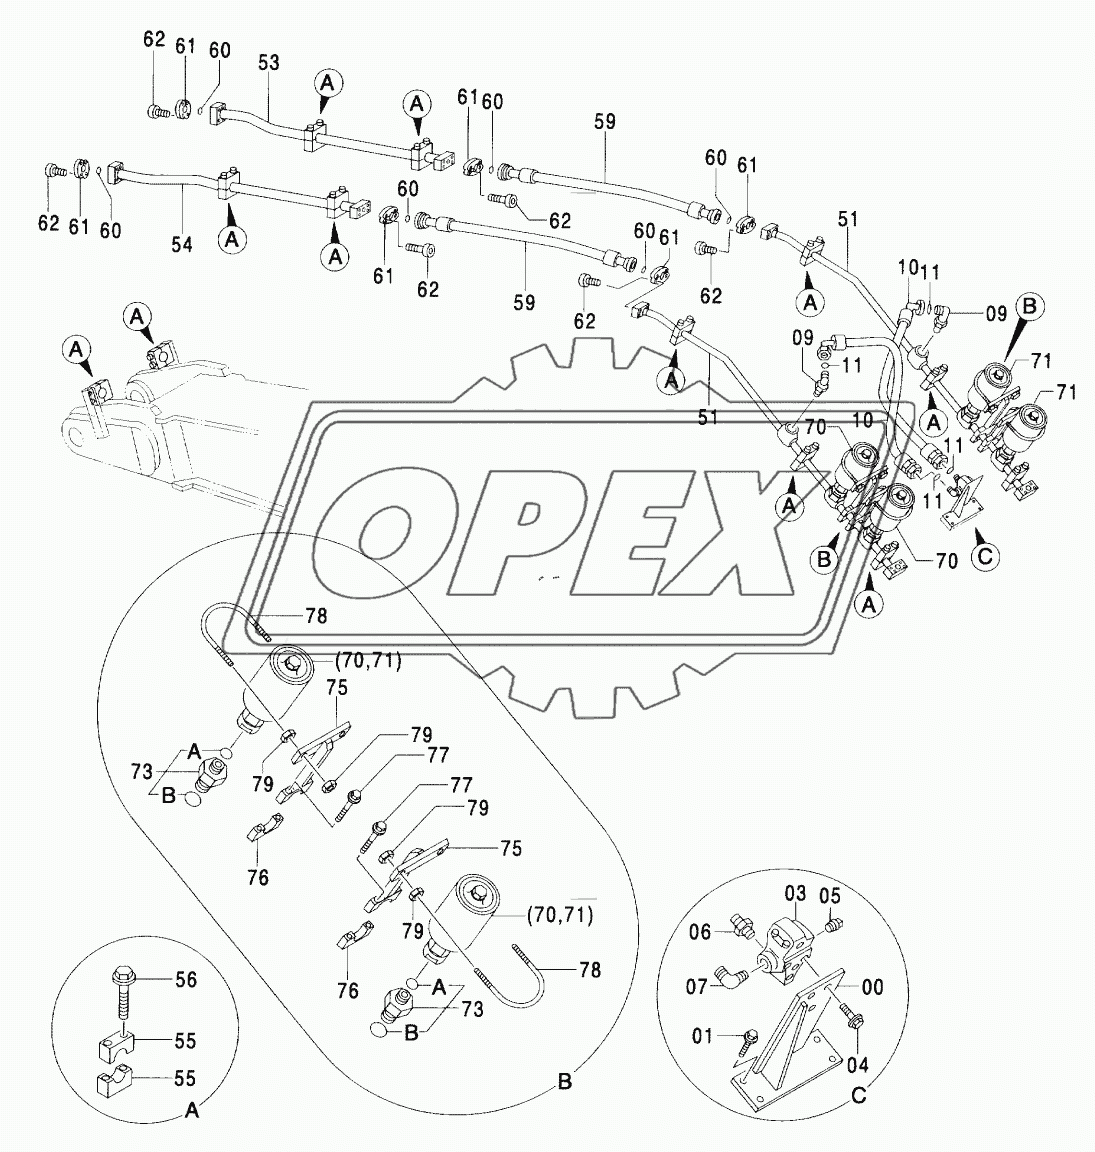 OKADA/FURUKAWA BREAKER PIPING (BOOM)